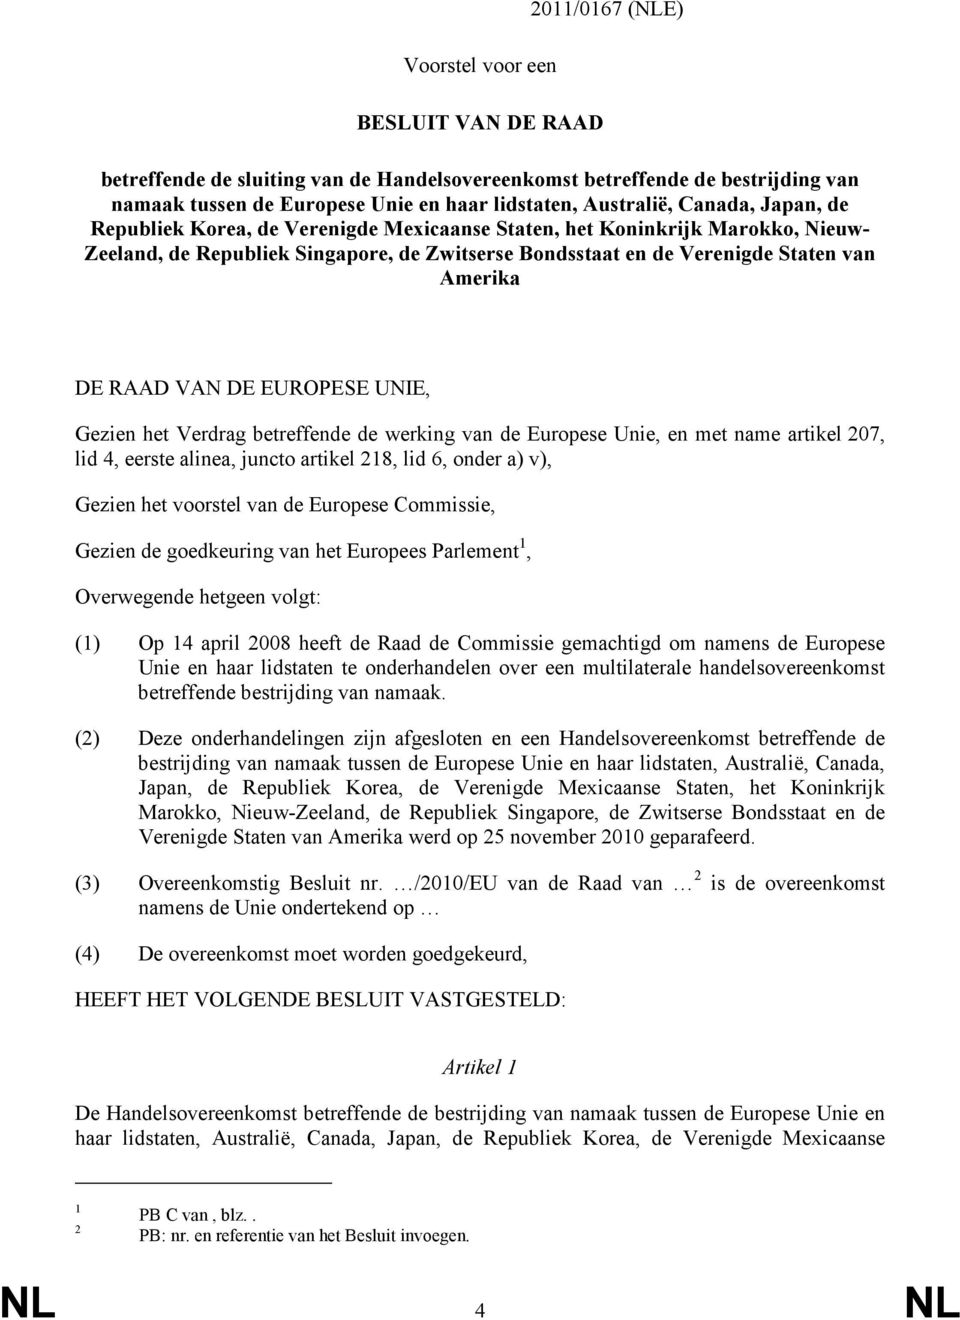 VAN DE EUROPESE UNIE, Gezien het Verdrag betreffende de werking van de Europese Unie, en met name artikel 207, lid 4, eerste alinea, juncto artikel 218, lid 6, onder a) v), Gezien het voorstel van de